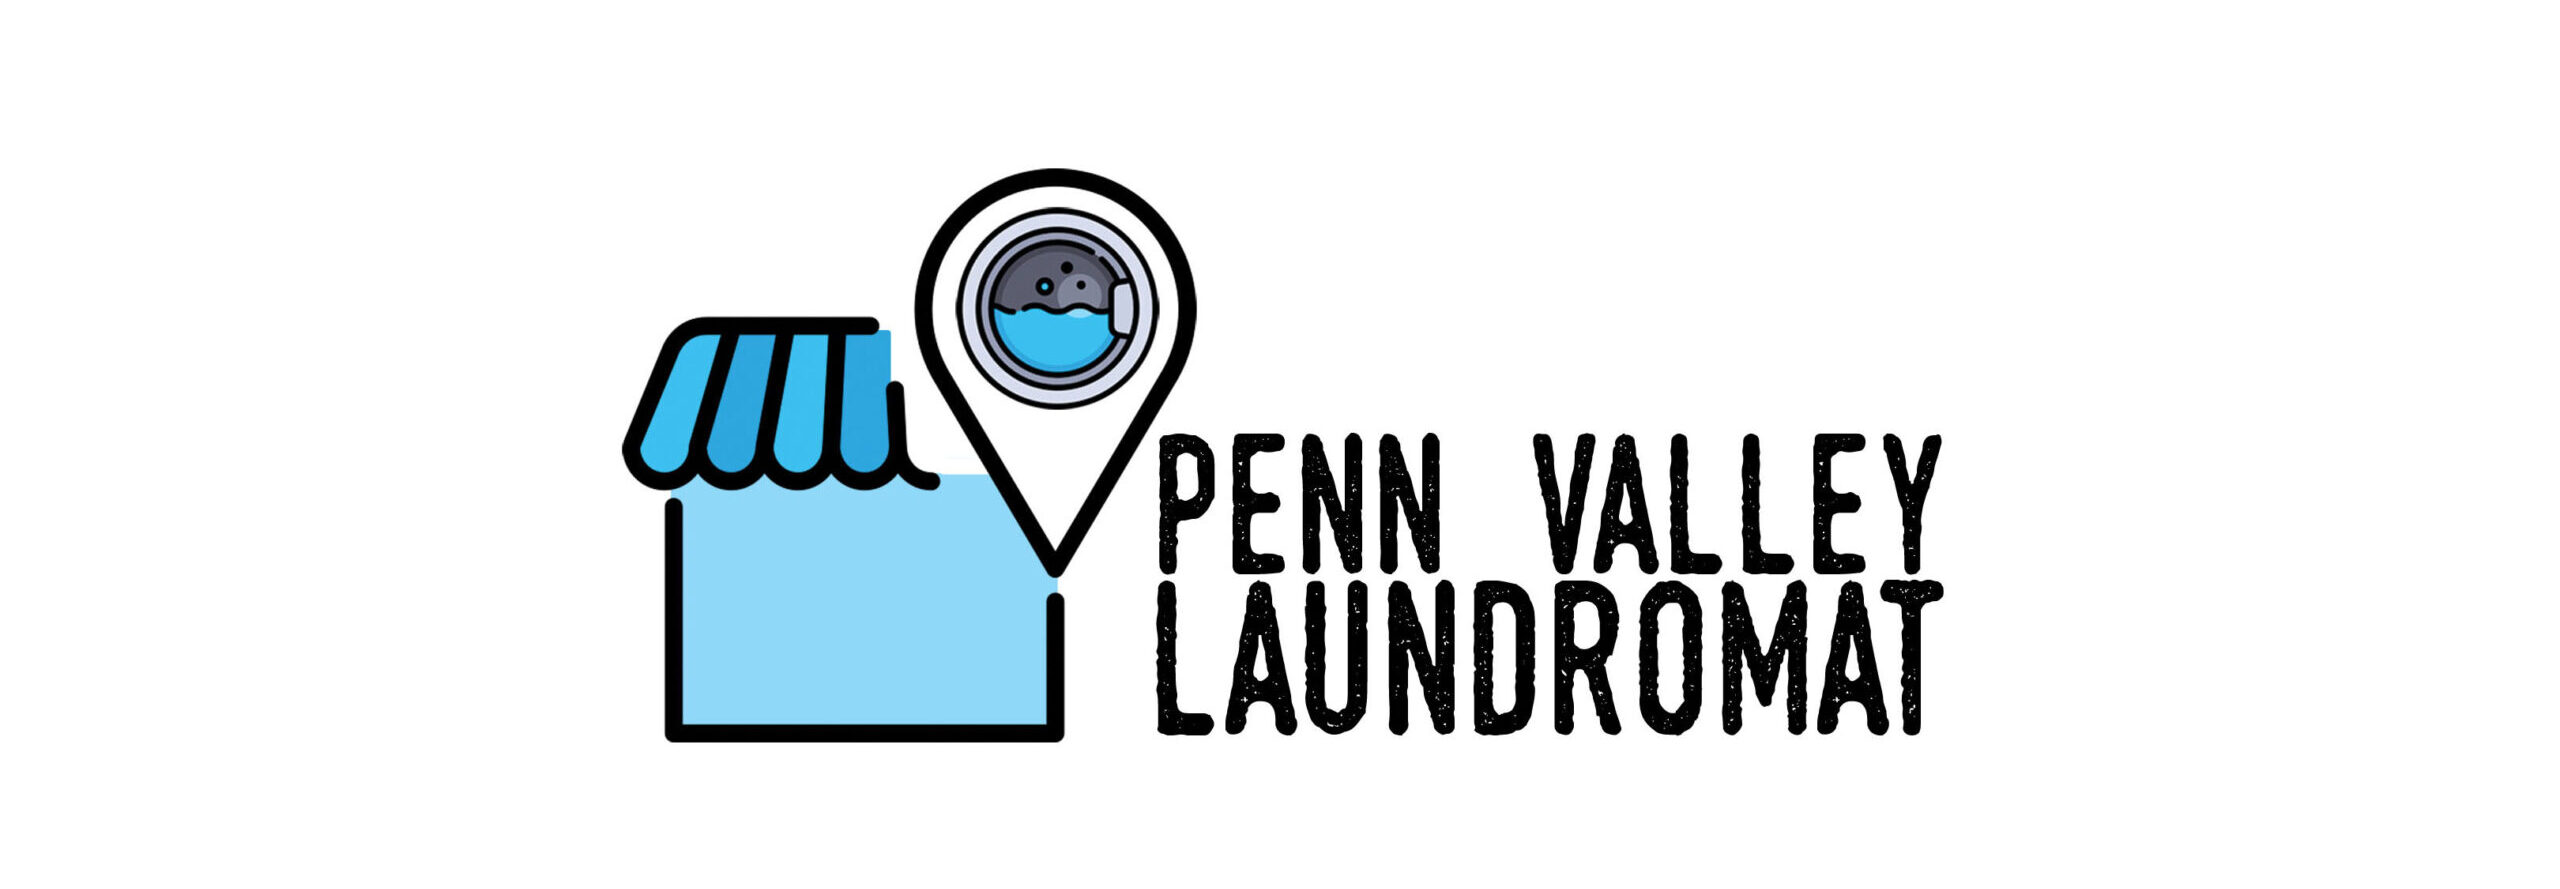 Penn Valley Laundromat